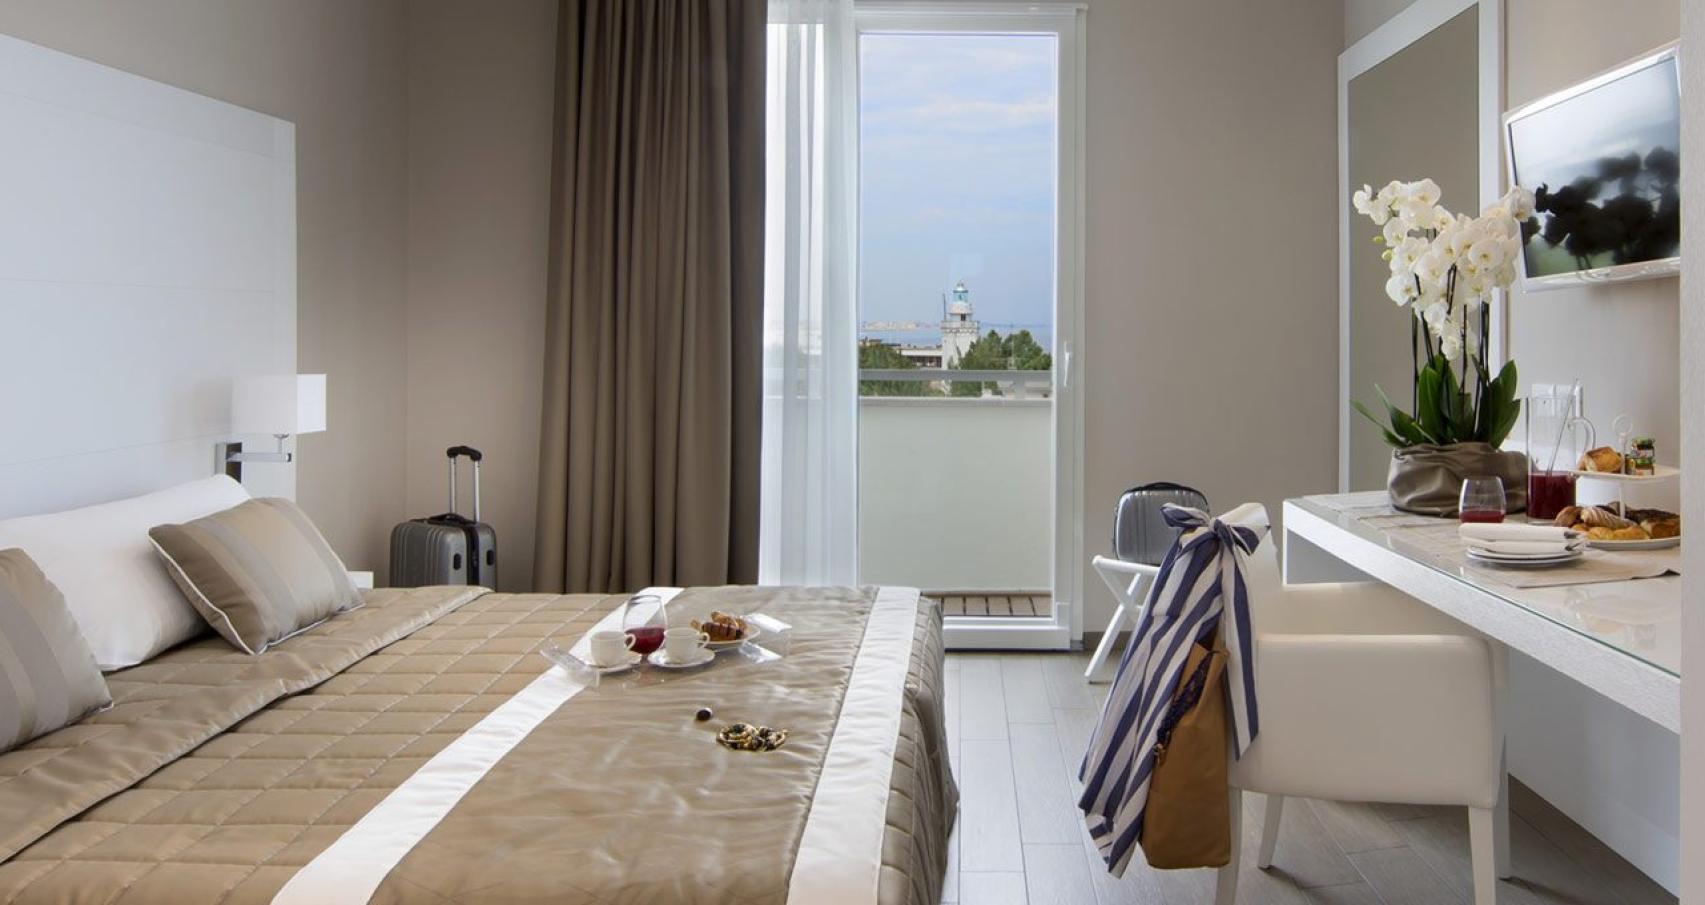 Elegante camera d'hotel con vista sul mare e colazione servita in camera.